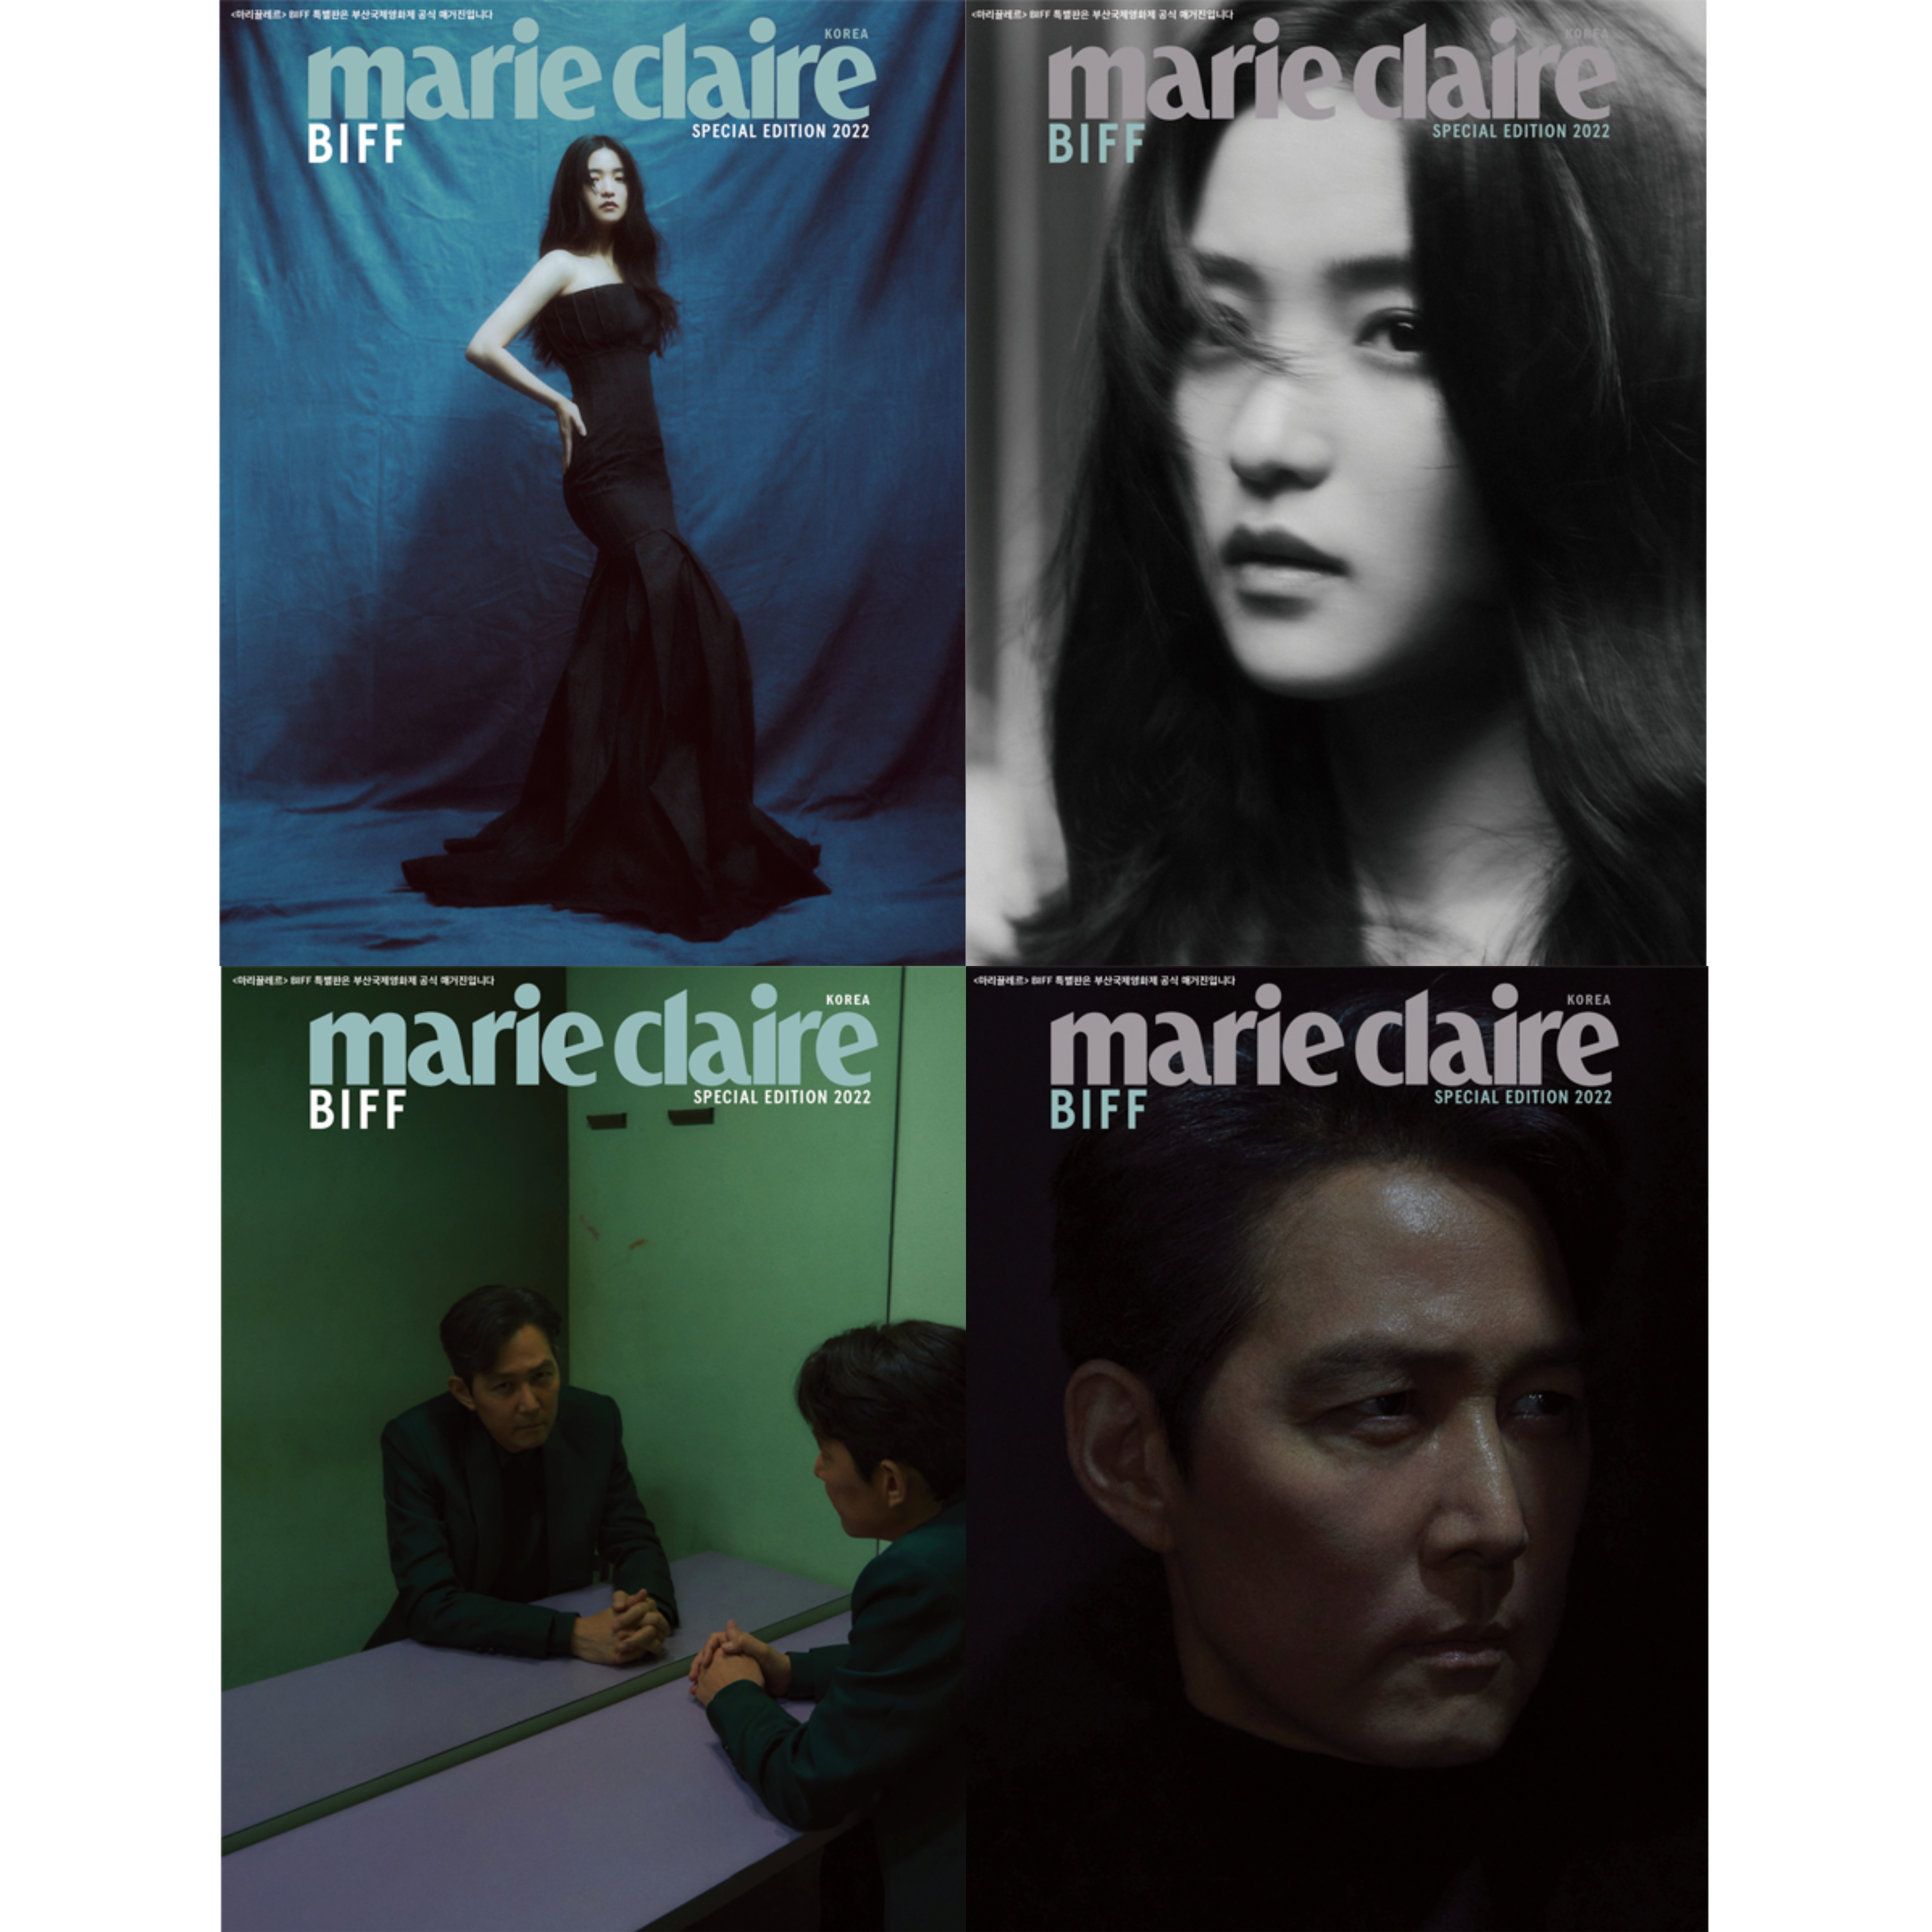 [全款] Marie claire BIFF Edition _indie散粉团